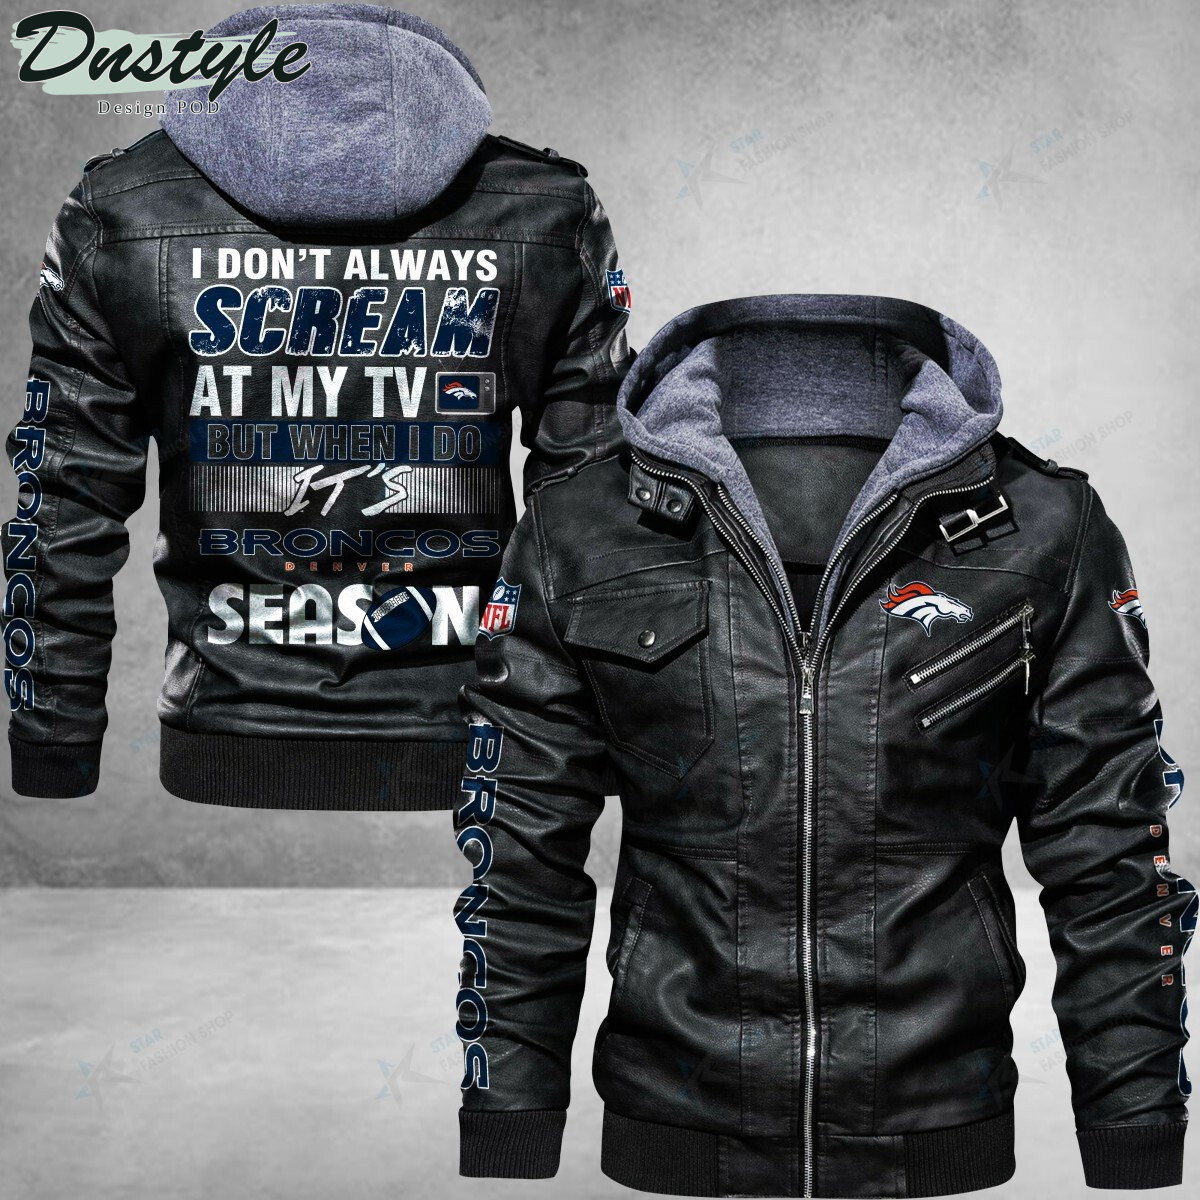 Denver Broncos I don't Always Scream At My TV Leather Jacket